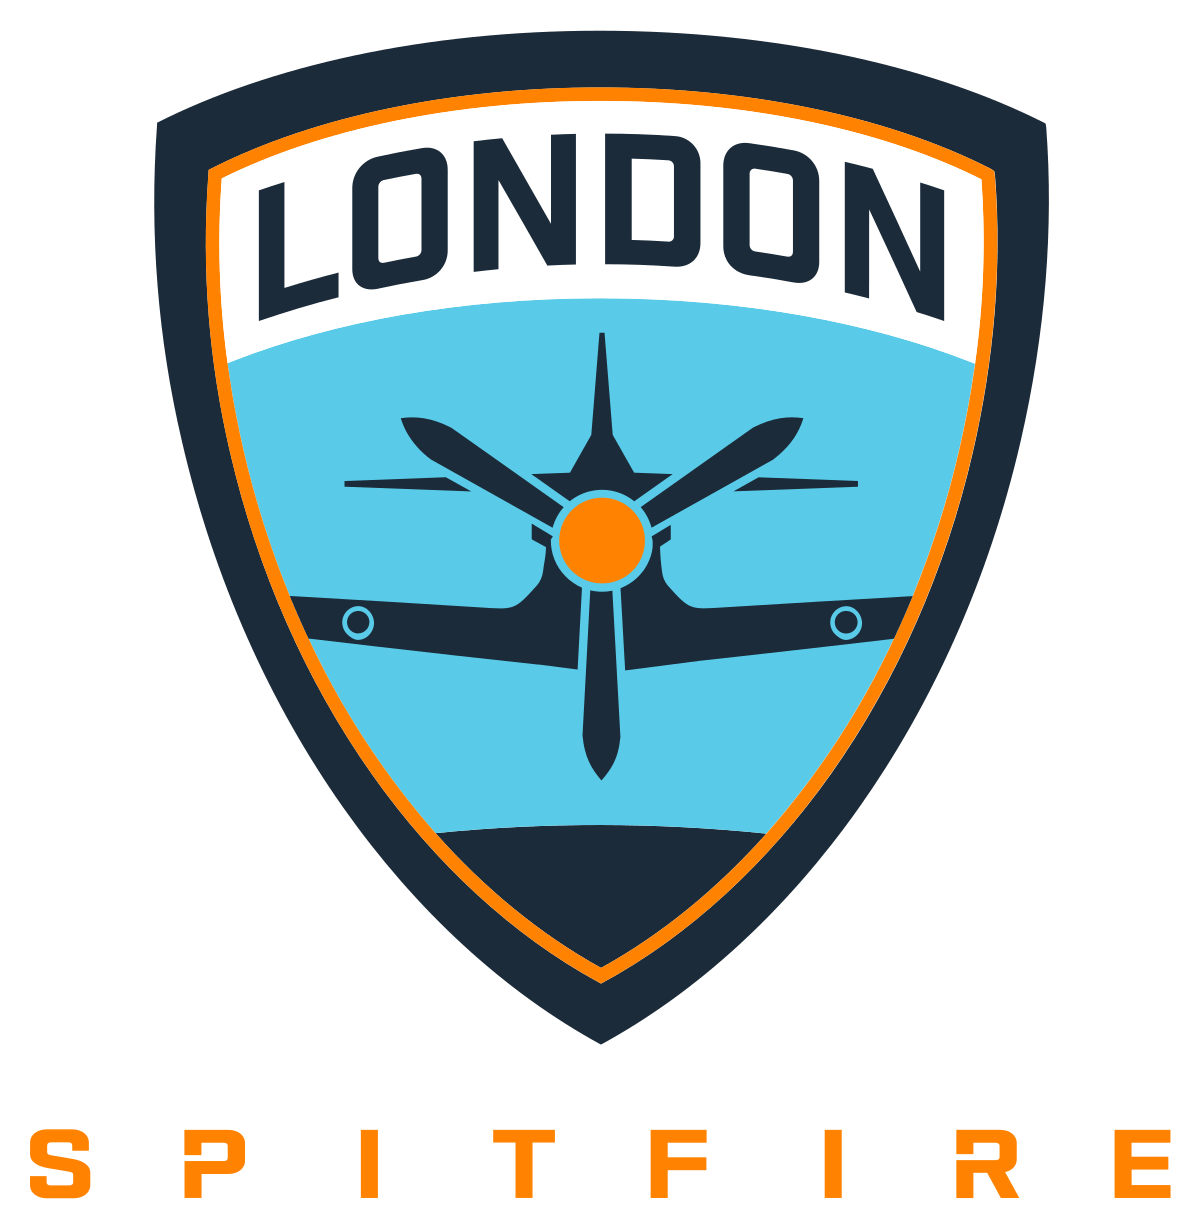 Spitfire Plane Logo - London Spitfire